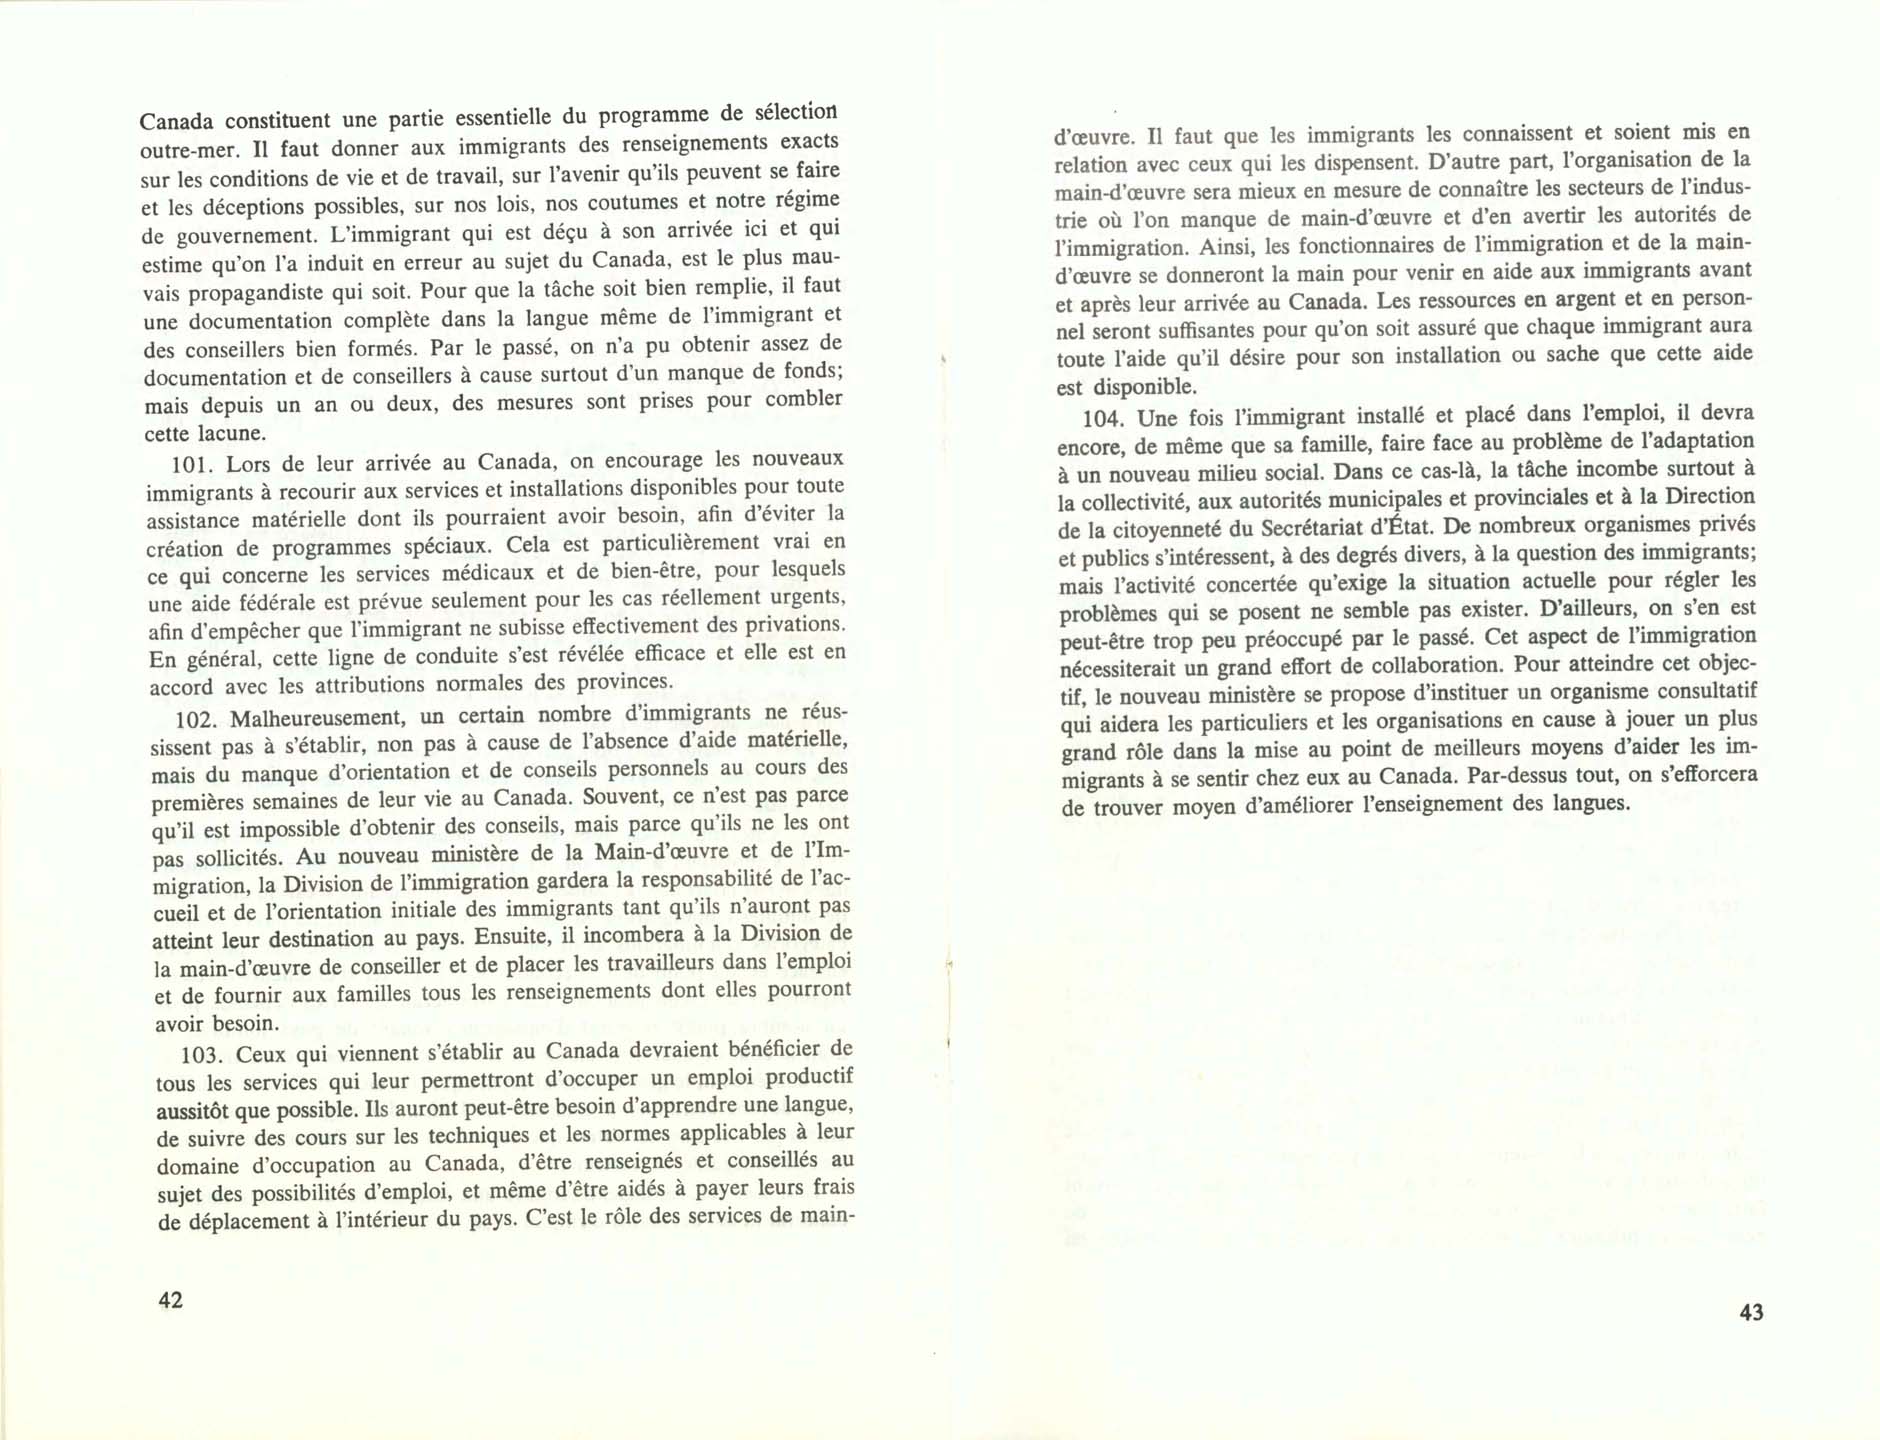 Page 42, 43 Livre Blanc sur l’immigration, 1966